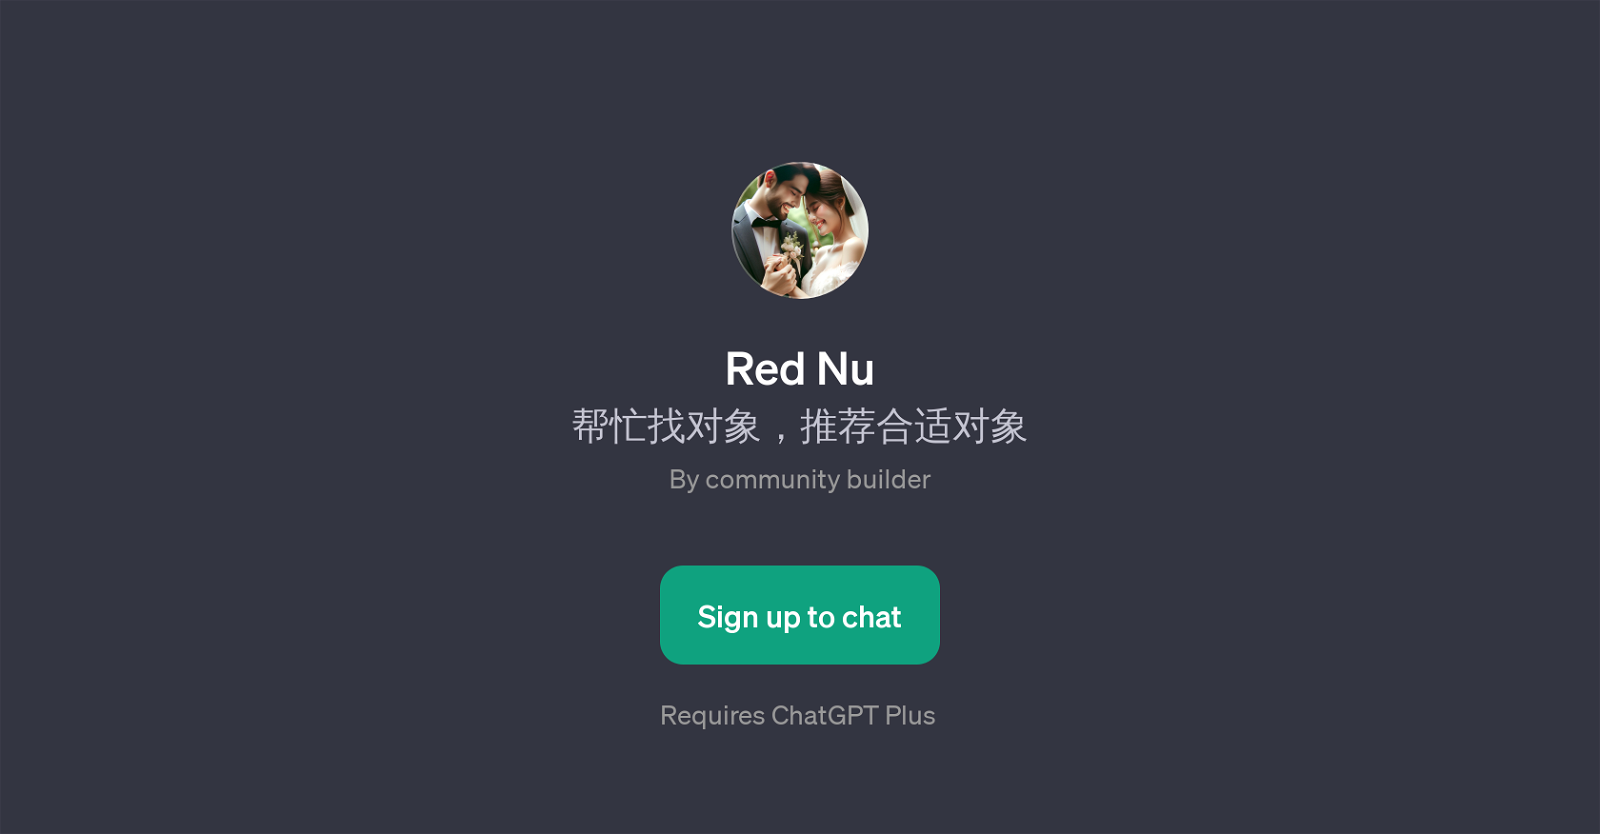 Red Nu website